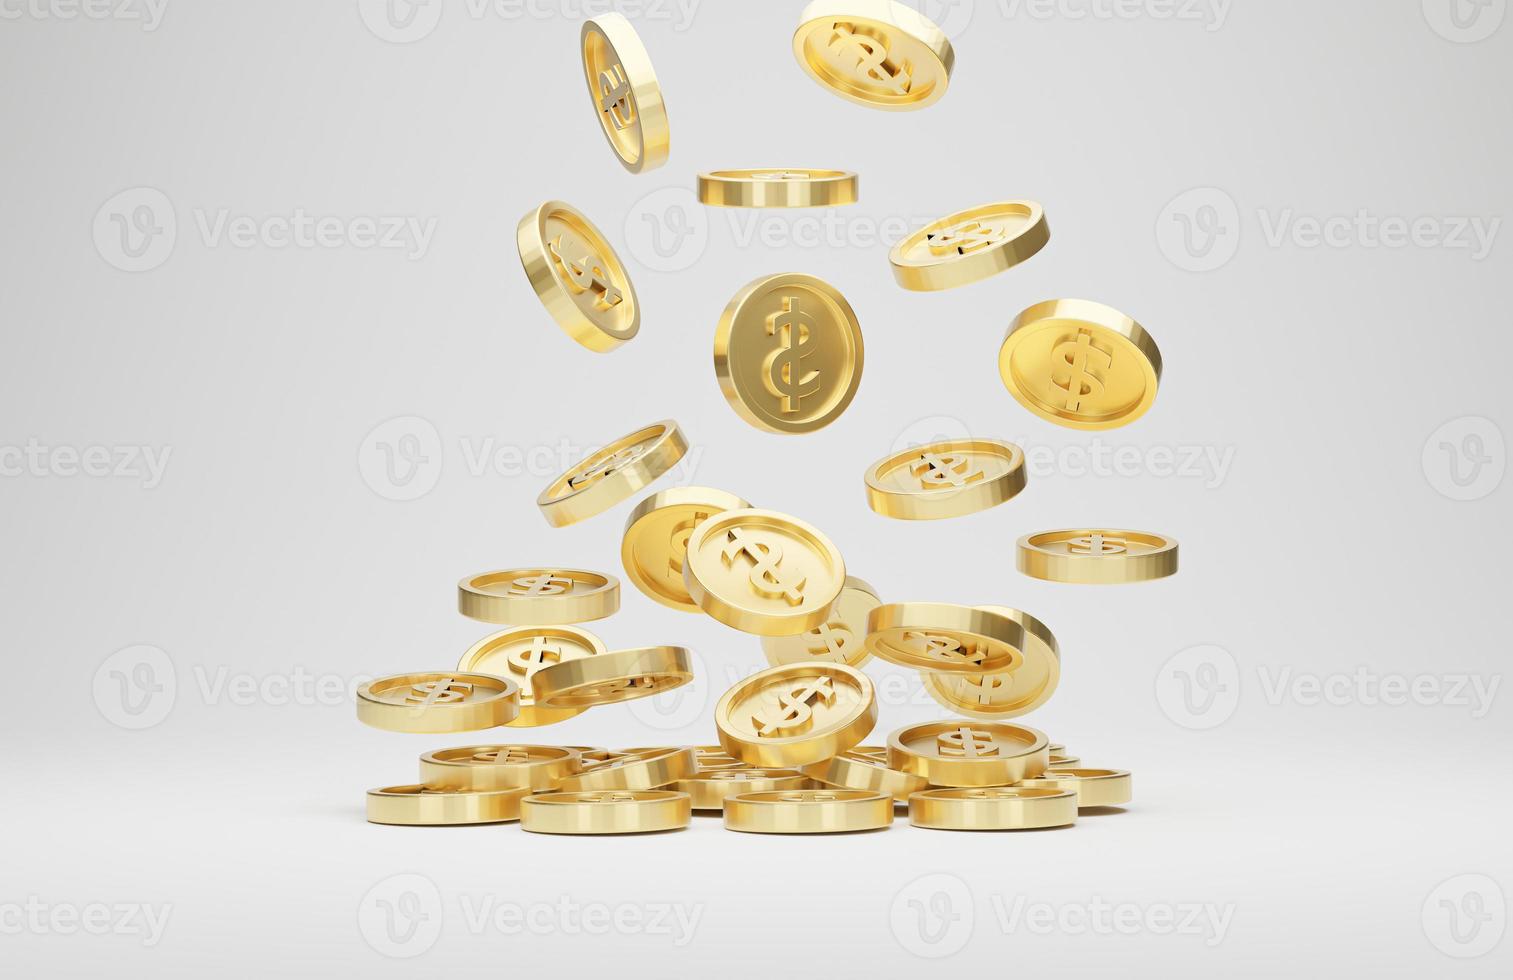 monedas de oro con signo de dólar cayendo o volando aisladas sobre fondo blanco. concepto de jackpot o casino poke. representación 3d foto